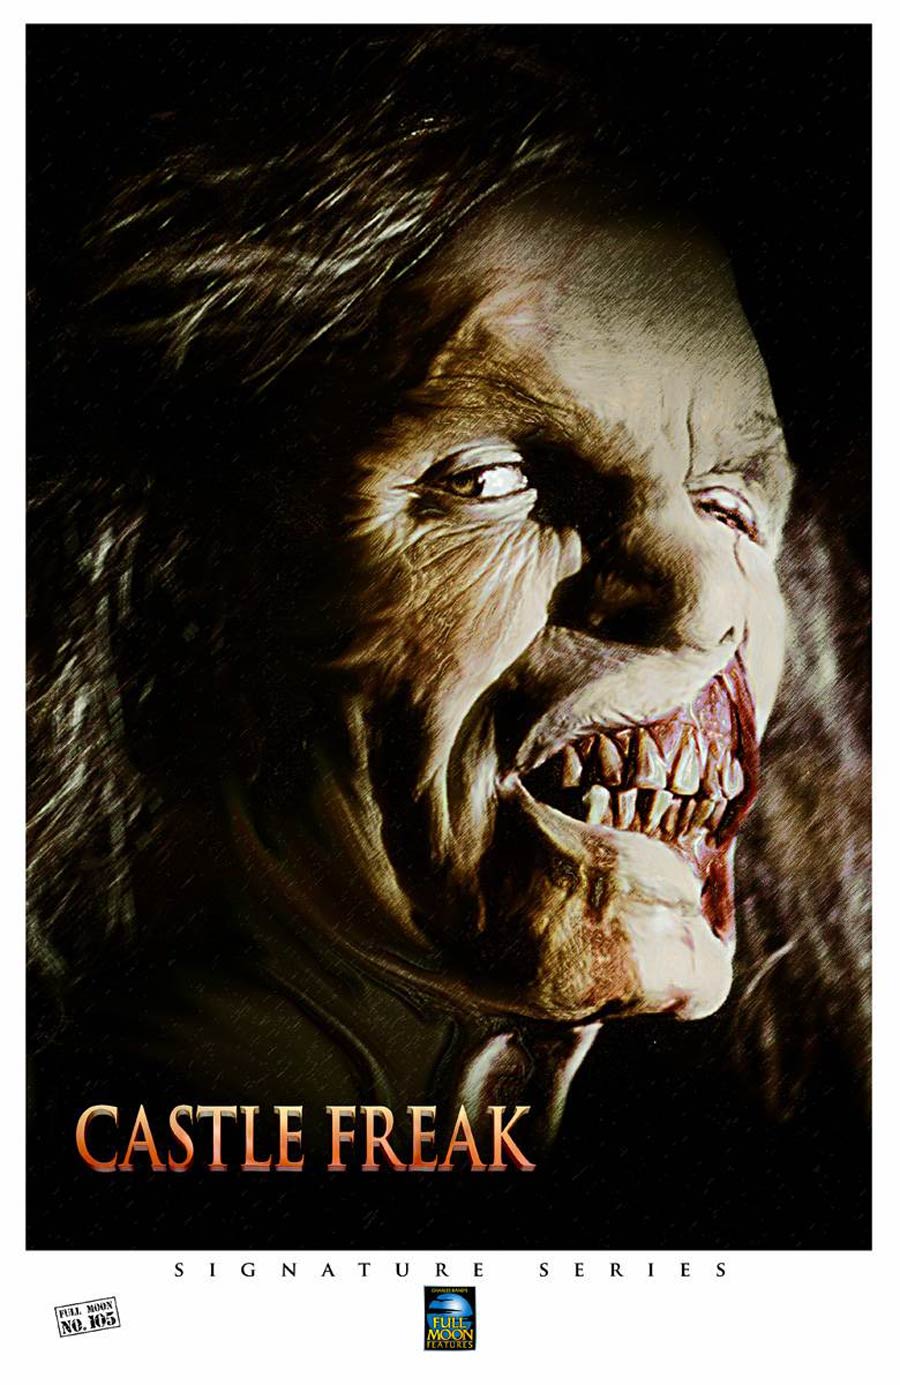 Signature Series Poster - Castle Freak